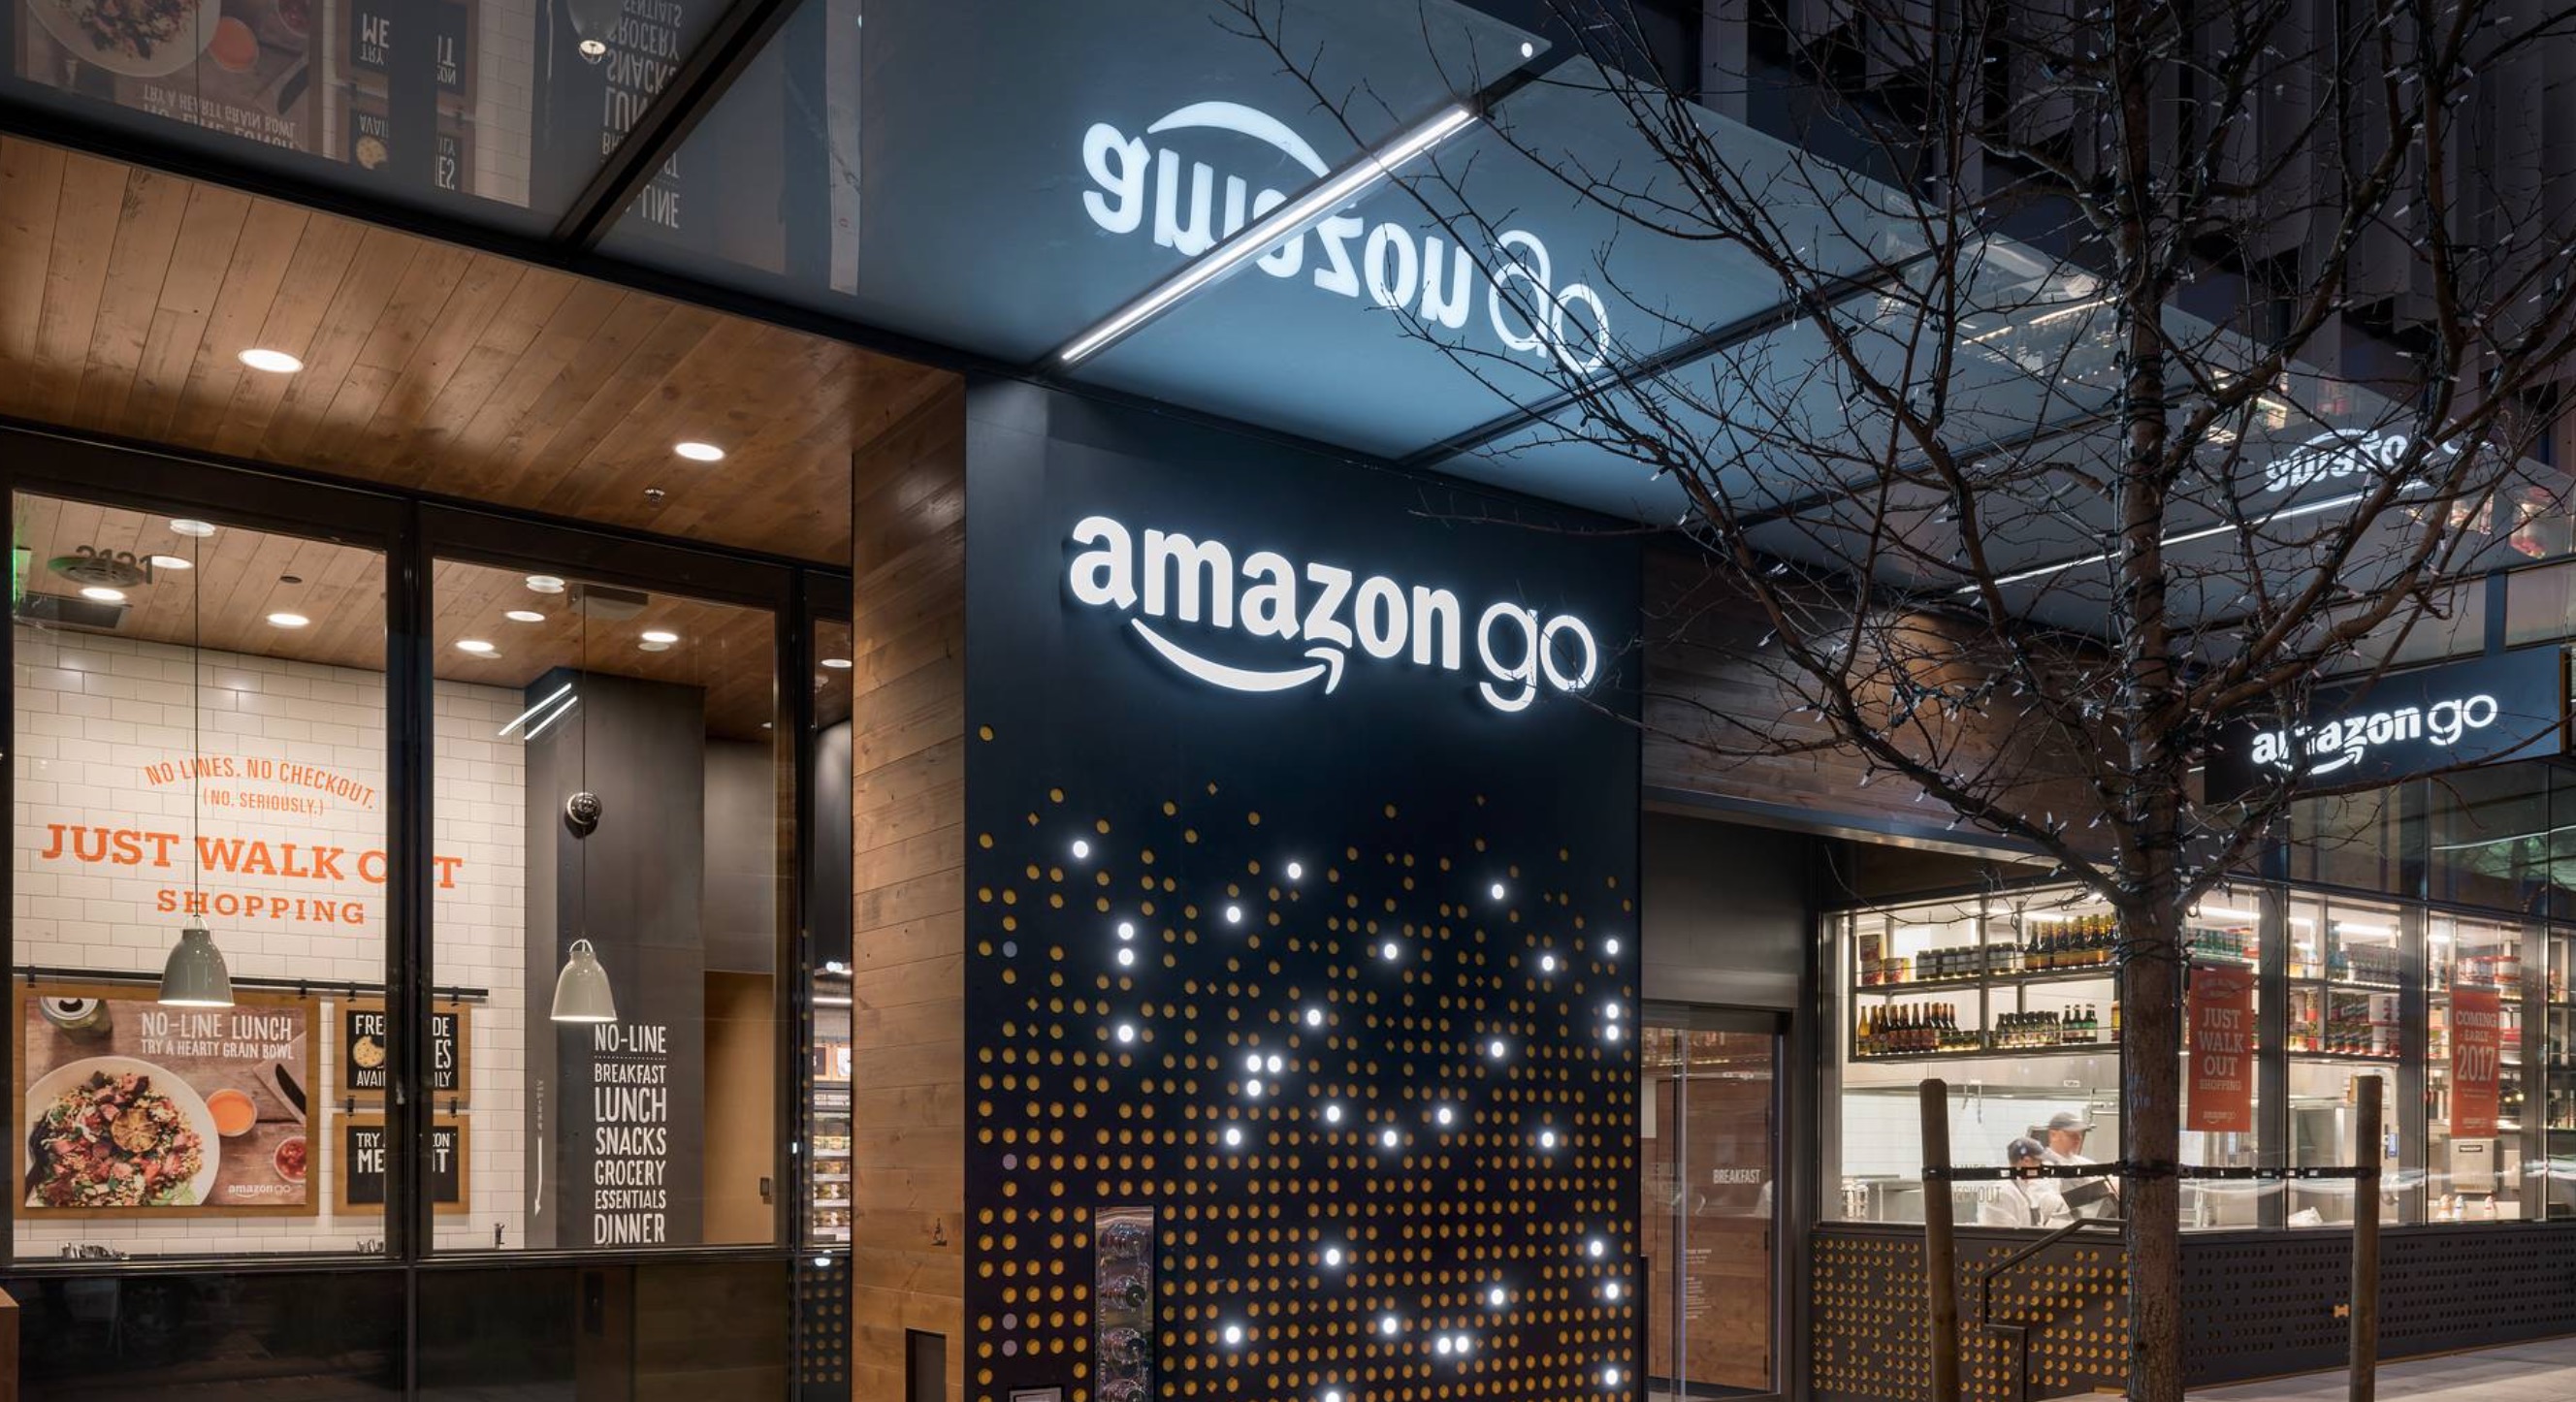 Amazon Go supermercato futuro addio code e casse